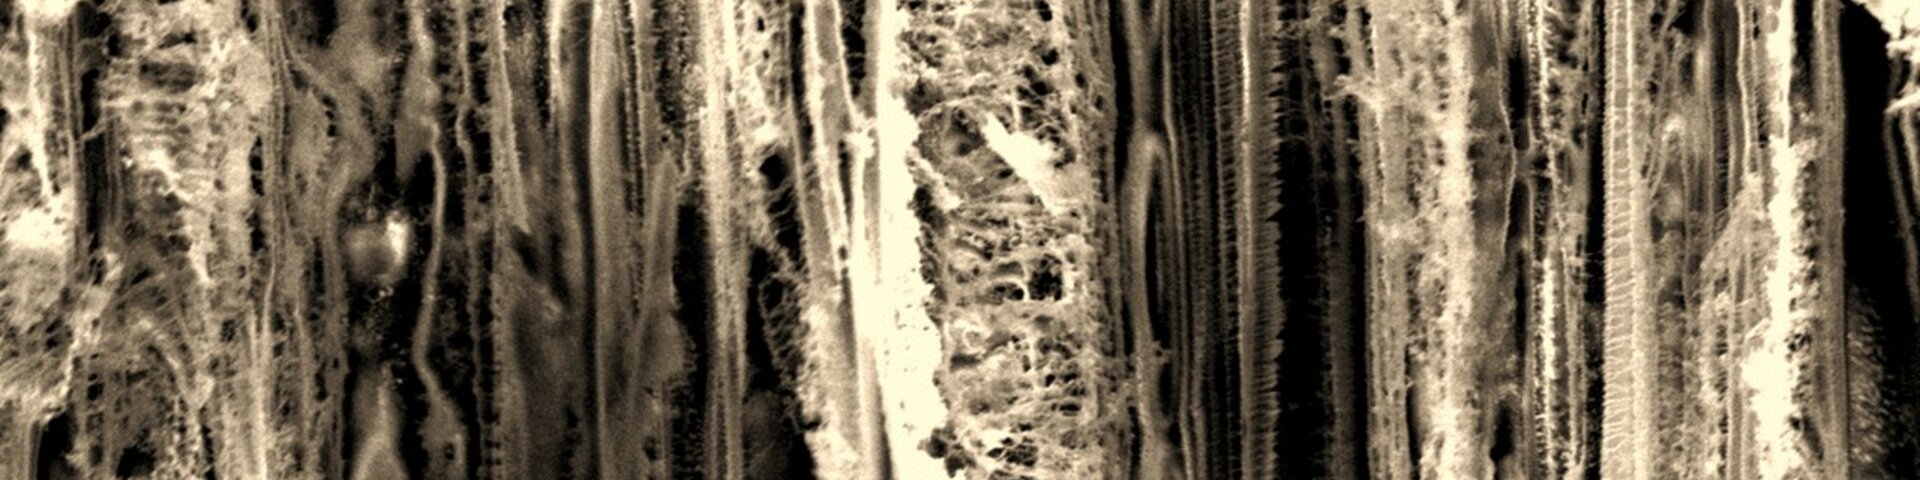 Skaneeriva elektronmikroskoopia pilt korrodeerunud puidu pinnast peale testi Euroopa Kosmoseagentuuris, kus simuleeriti pikaajalist kokkupuudet madalal orbiidil oleva atomaarse hapnikuga. 